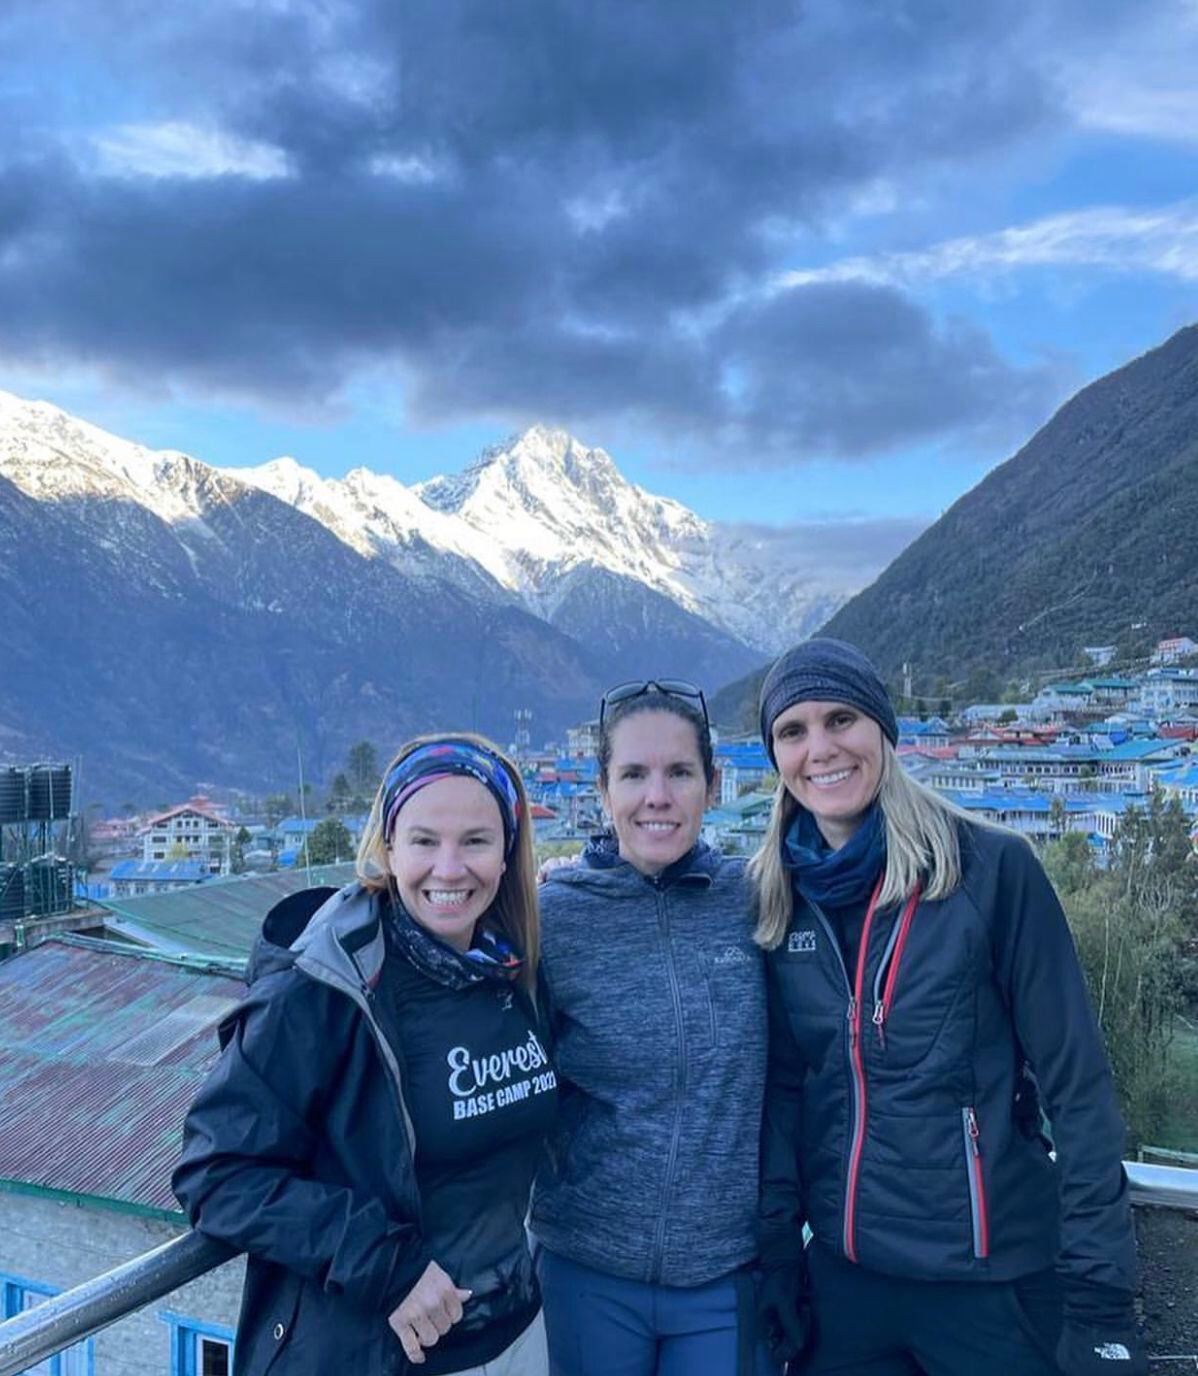 Esta aventura hacia el Everest es más especial para Lorena porque camina junto a su hermana Amanda. En la foto las acompaña la caminante Andrea Alfaro. Foto: Instagram